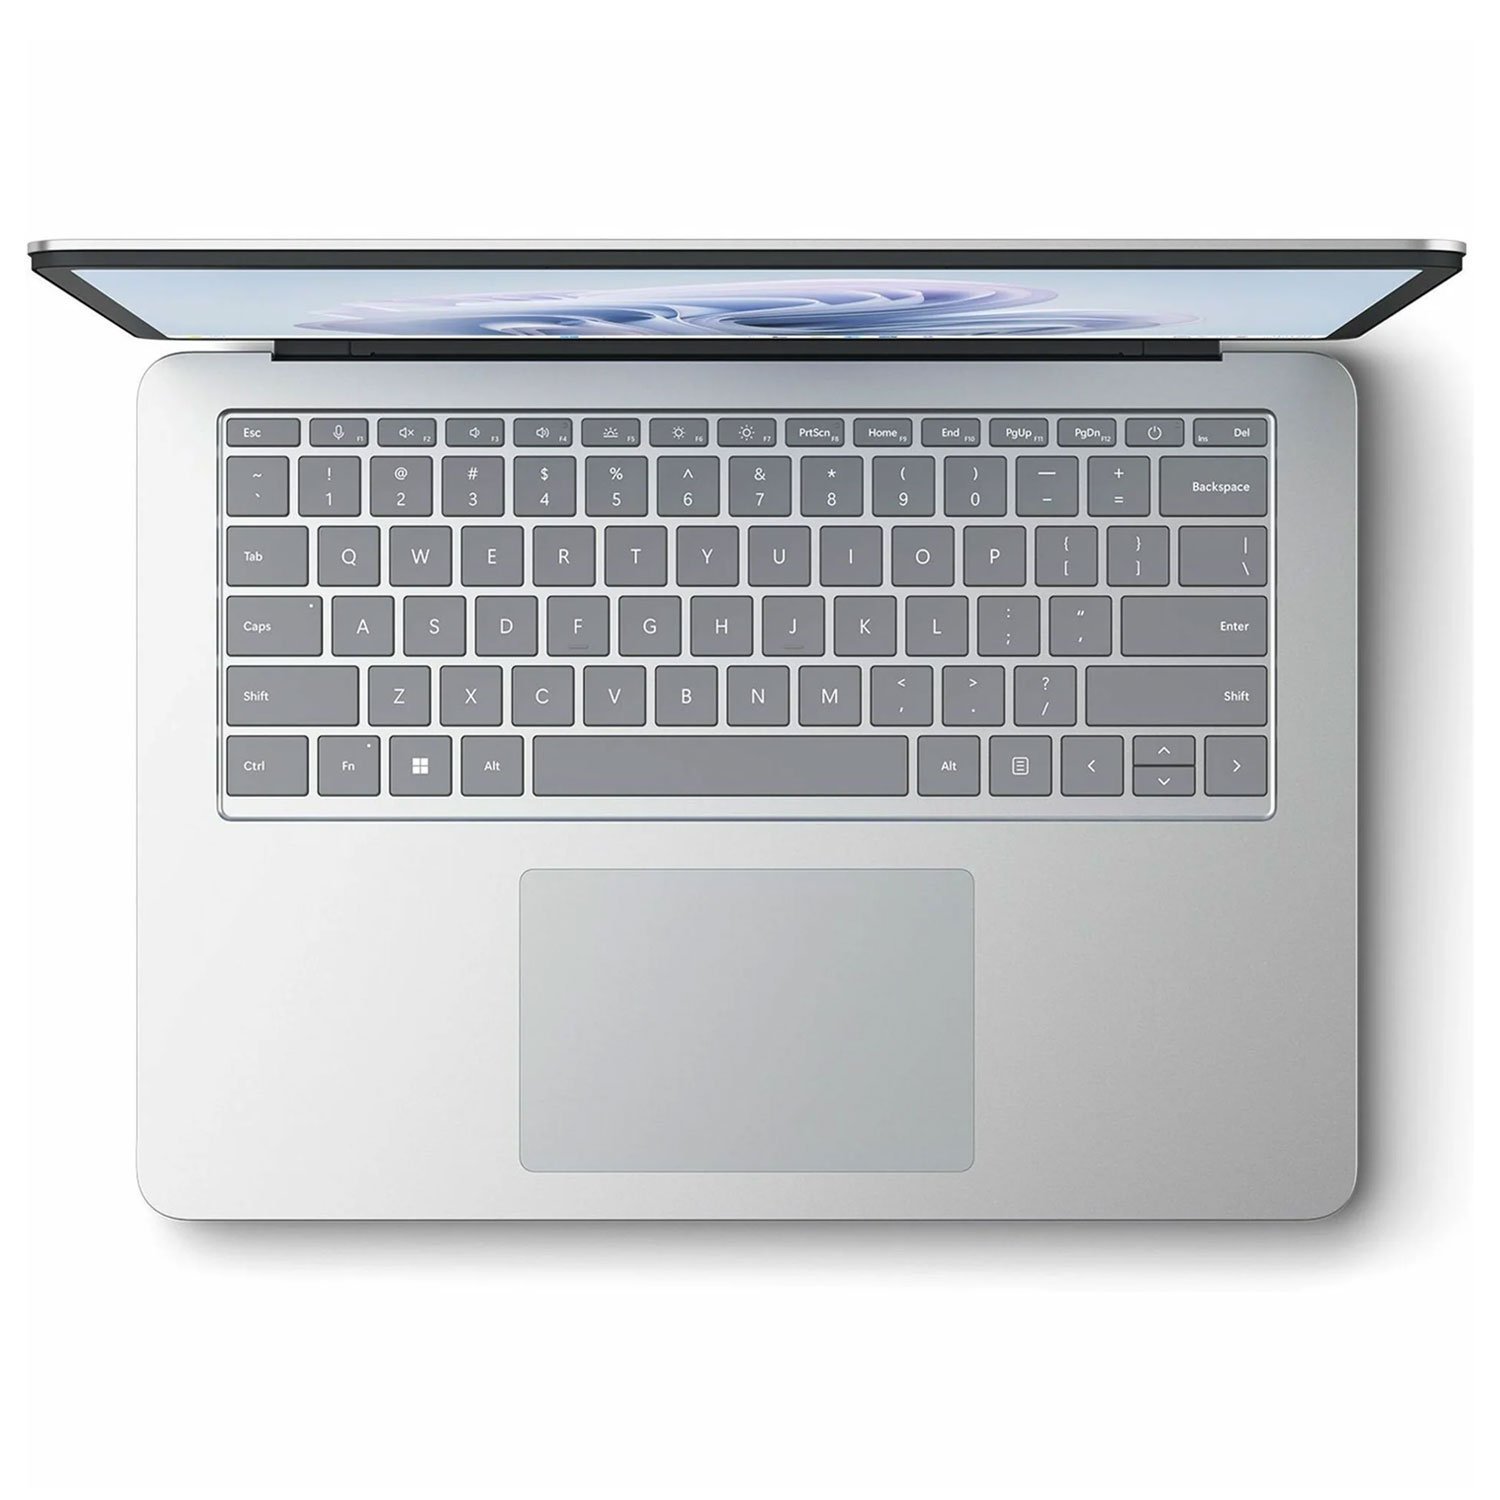 سرفیس لپ تاپ استودیو 2 مایکروسافت 14 اینچ Core i7-64GB-1TB